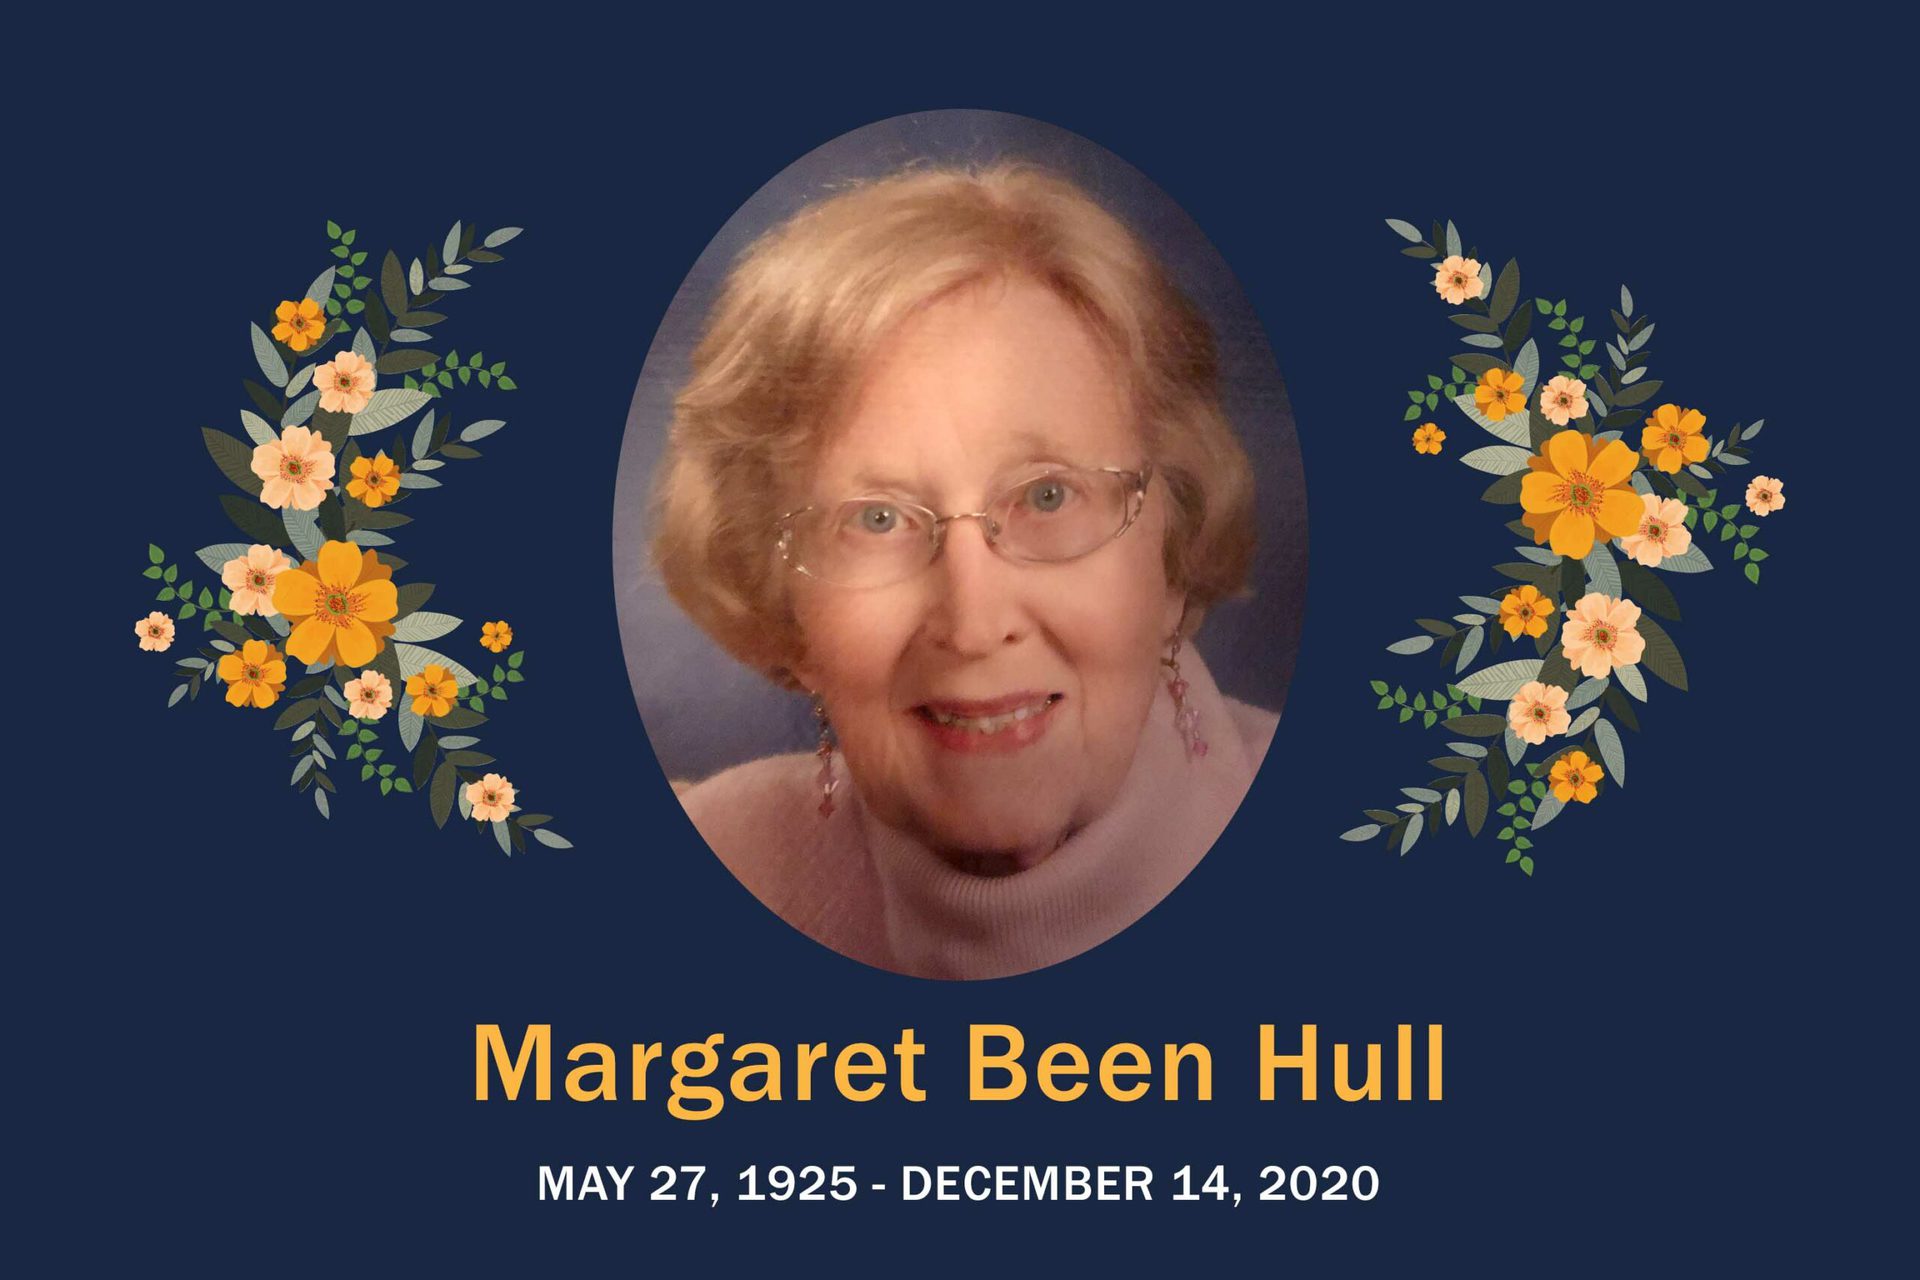 Obituary Margaret Hull